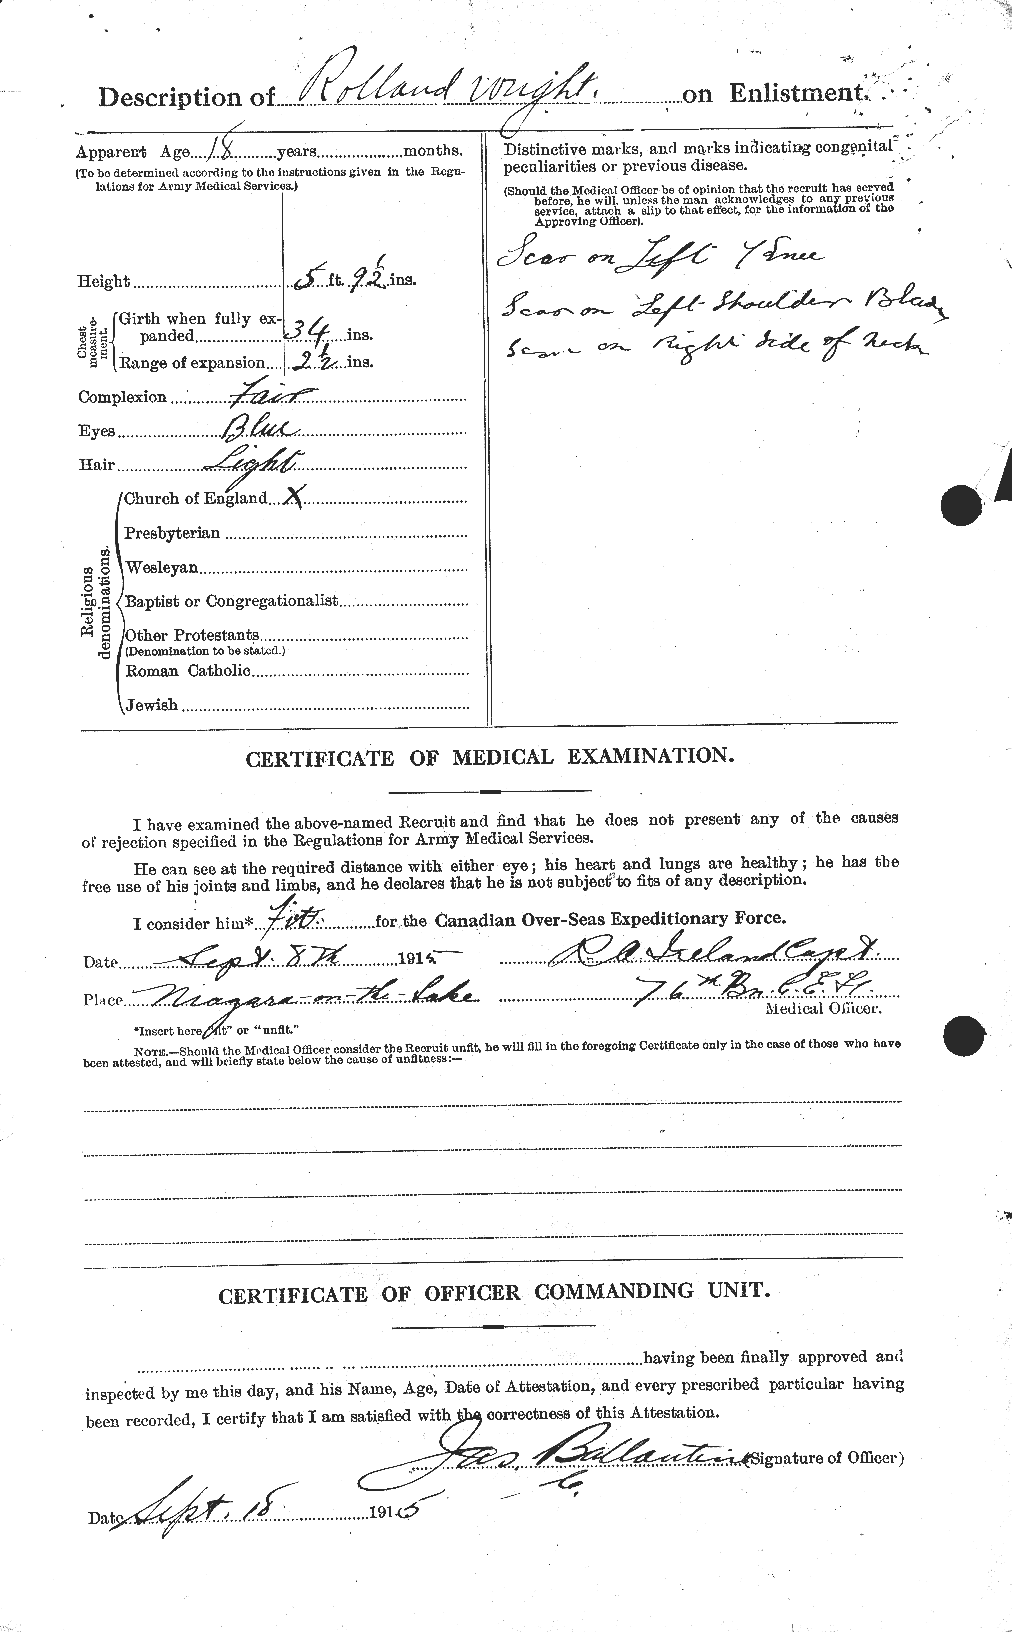 Dossiers du Personnel de la Première Guerre mondiale - CEC 688525b